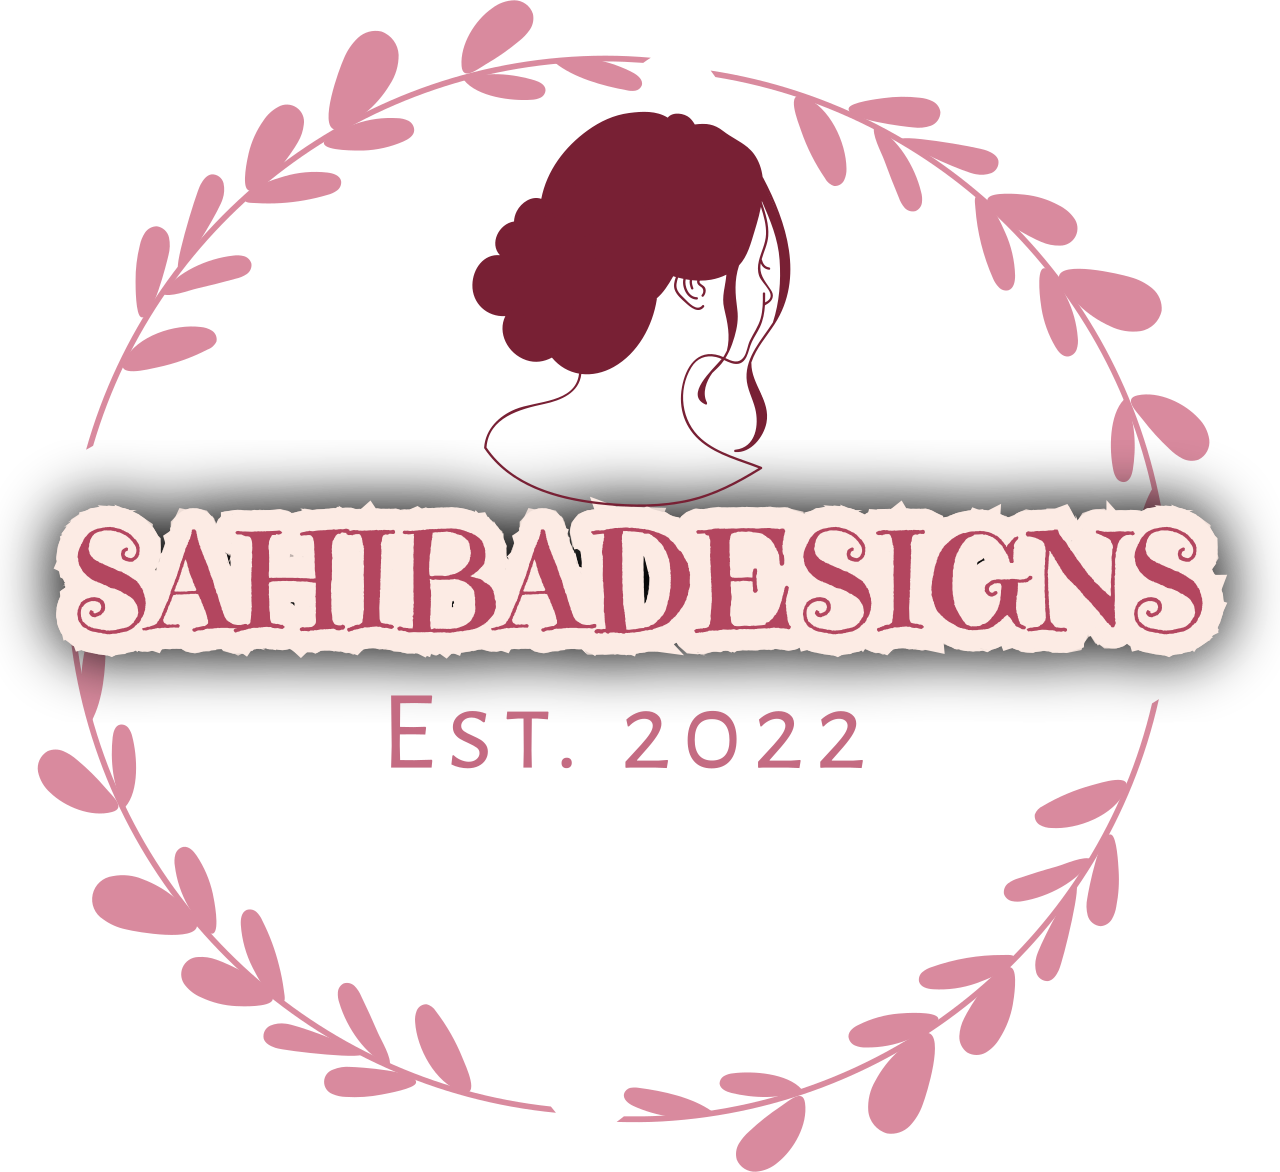 Sahibadesigns 's web page